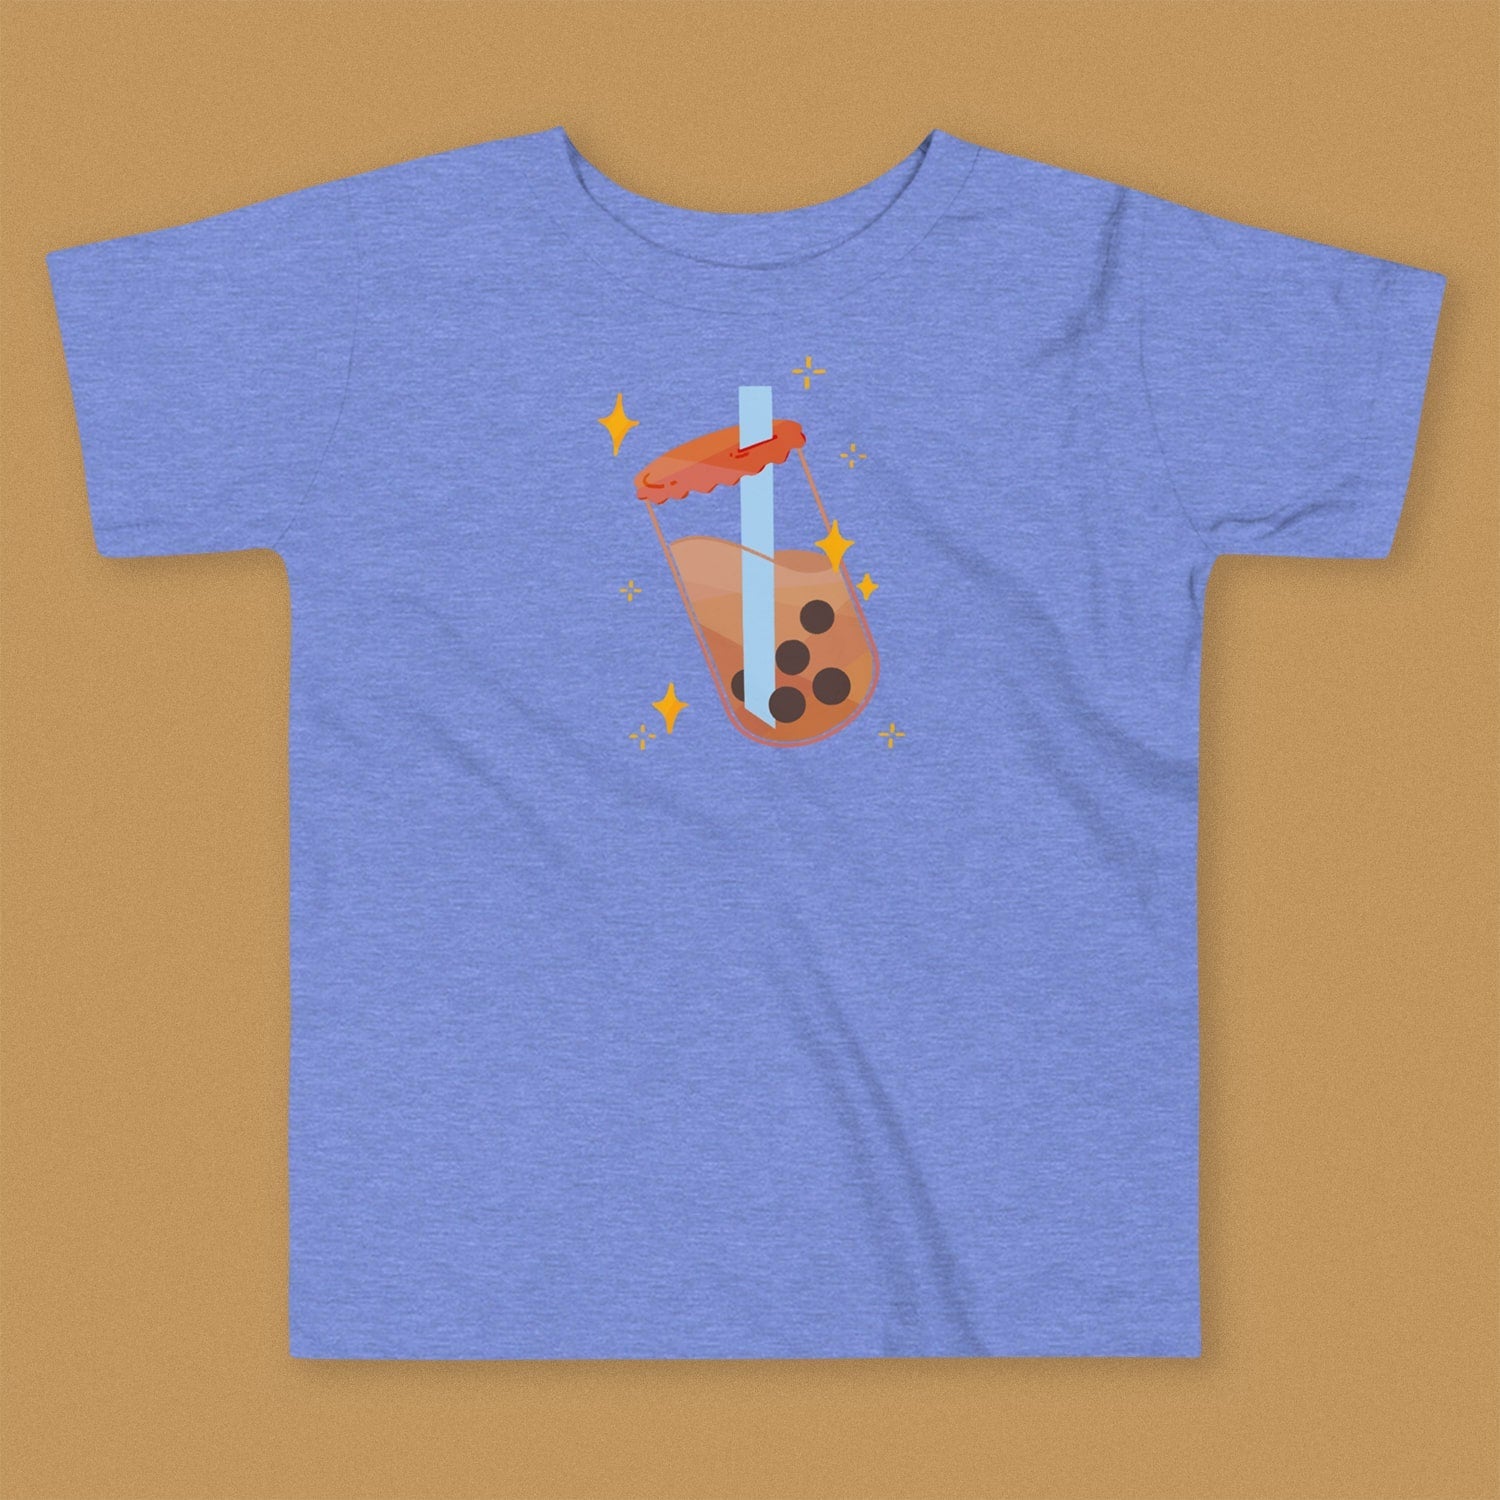 Boba Bliss Toddler T-Shirt - Ni De Mama Chinese Clothing